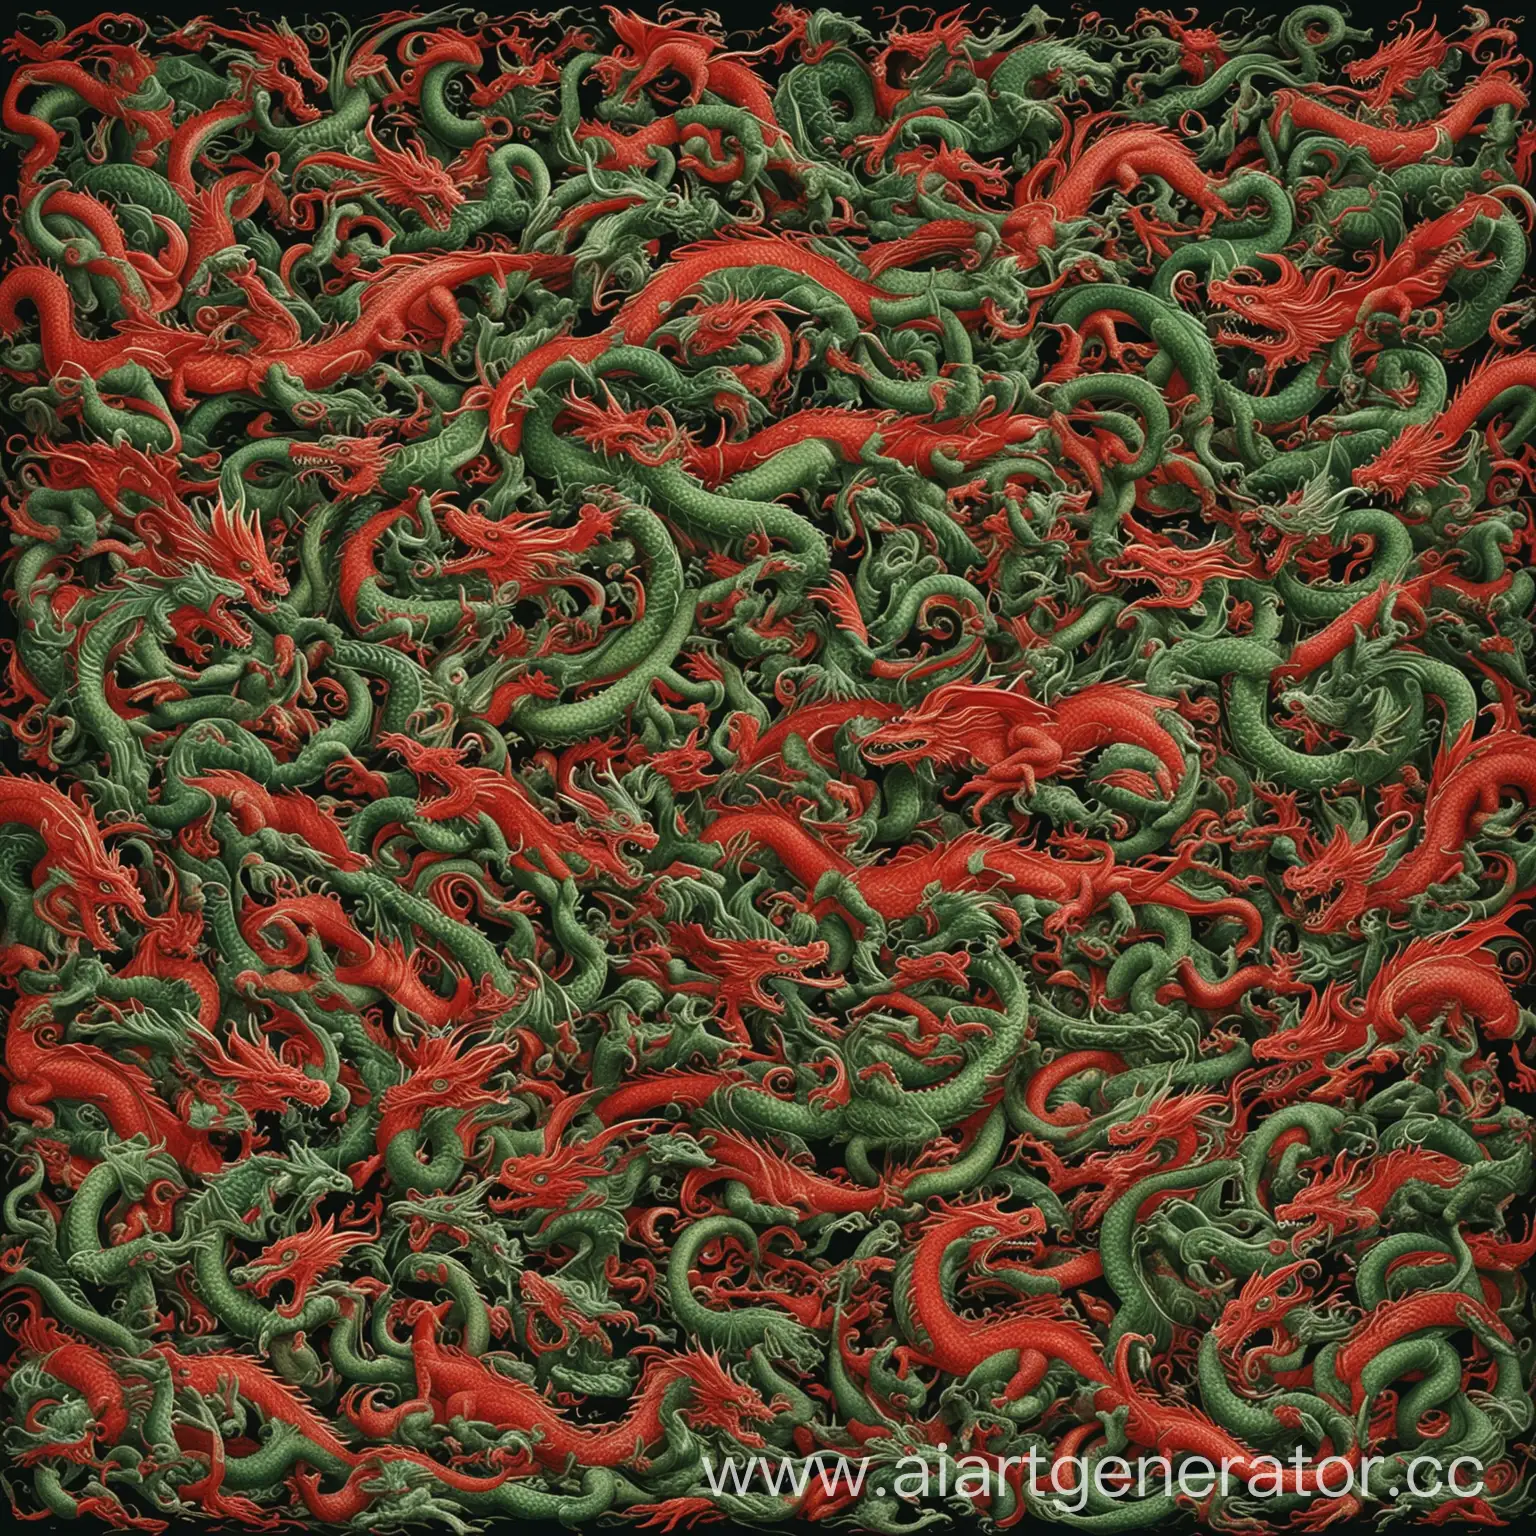 Много драконов, с зеленым и красным цветом, драконы изображены целиком